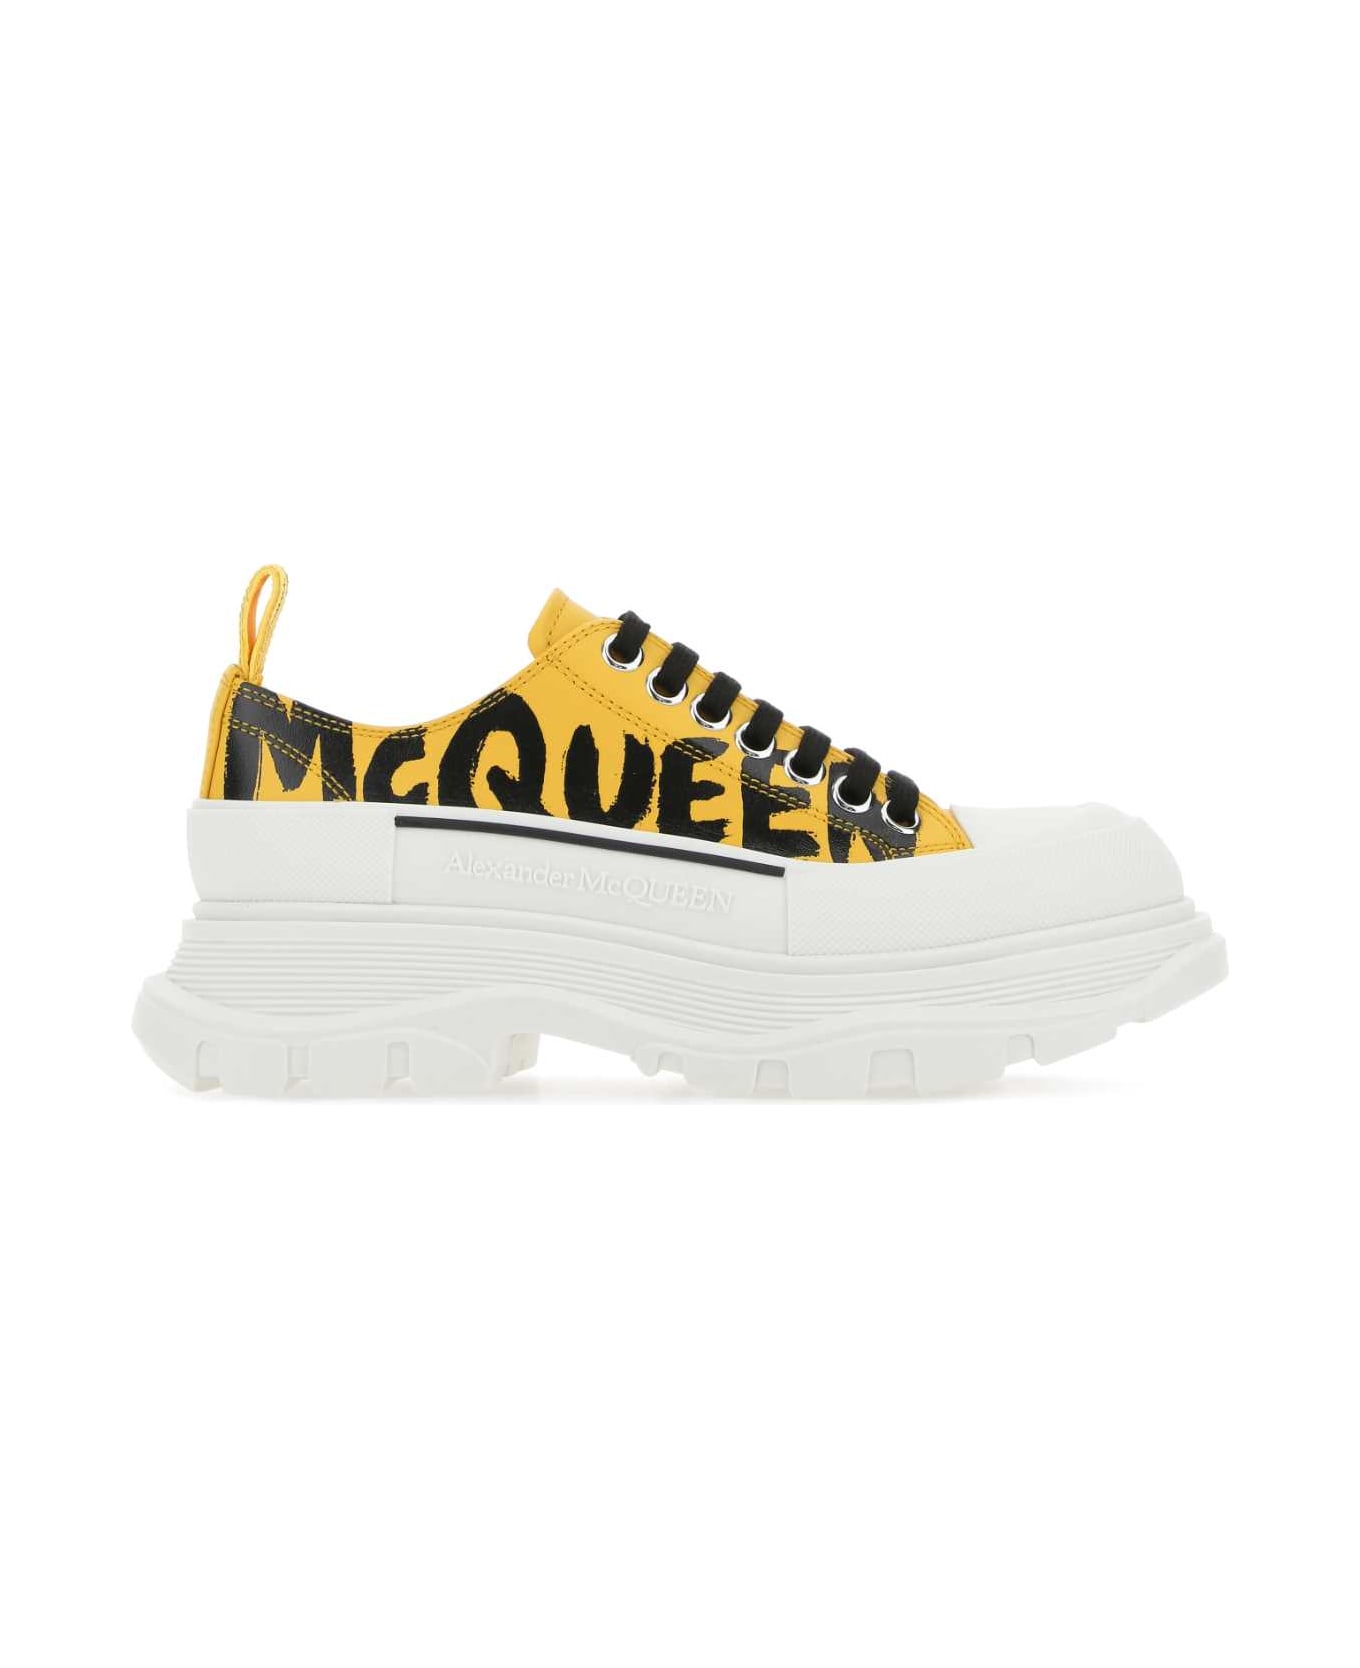 Alexander McQueen Yellow Leather Tread Slick Sneakers - 7086